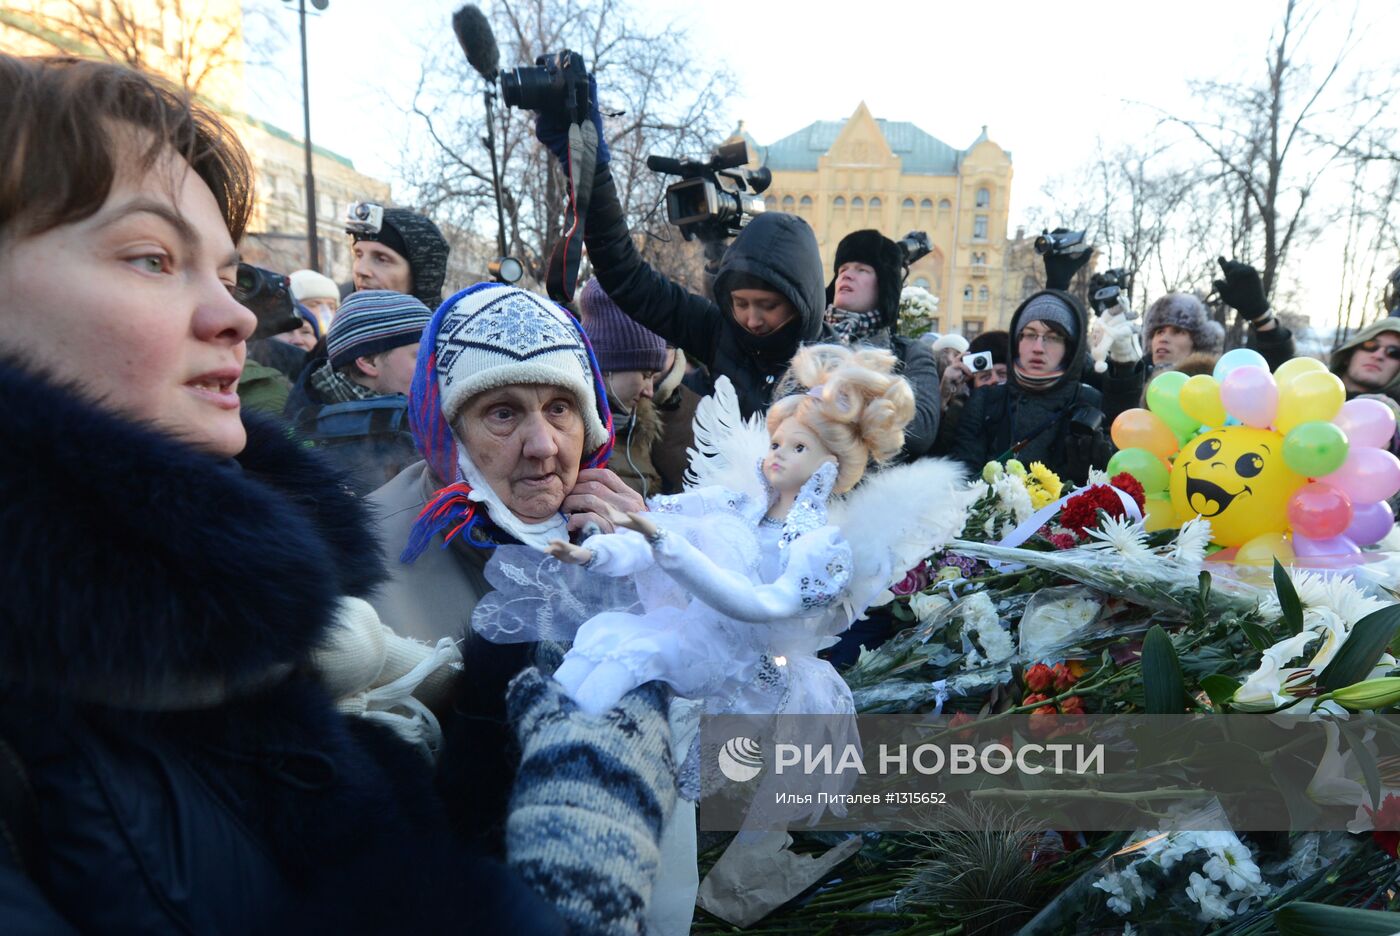 Акция "Марш свободы" в Москве